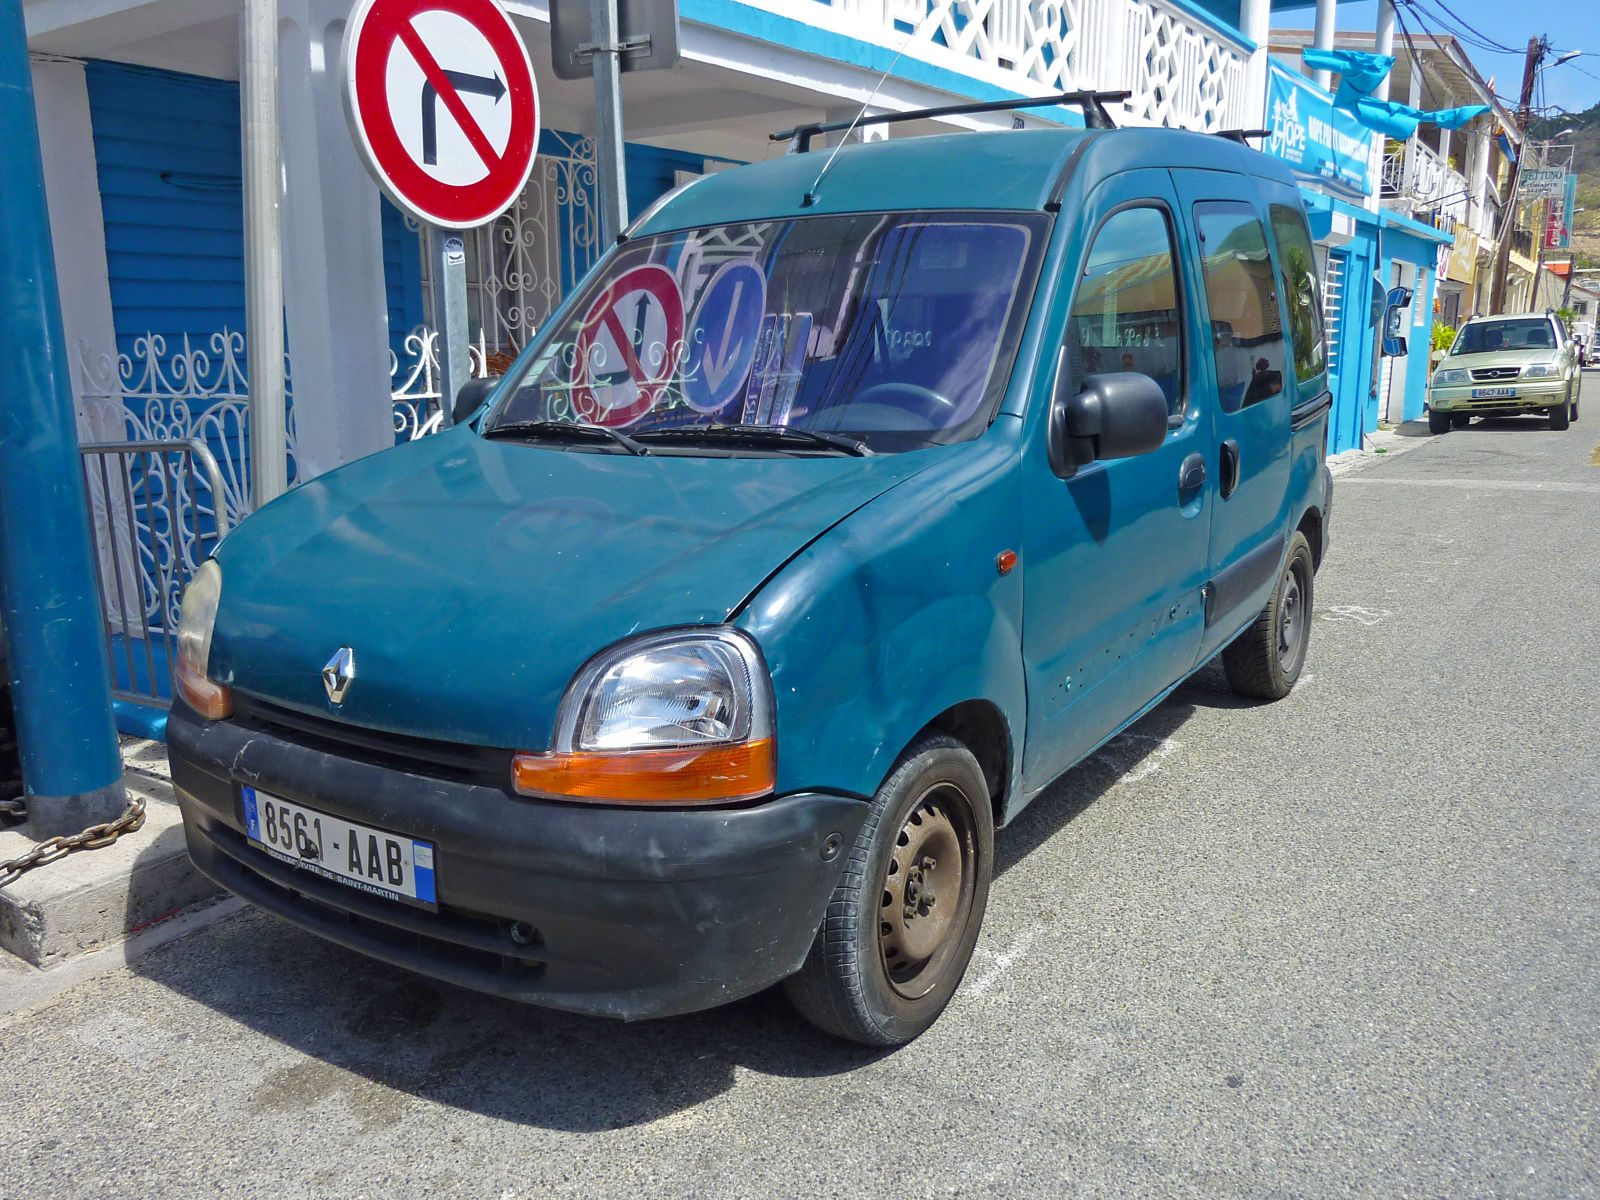 Renault wacky work van